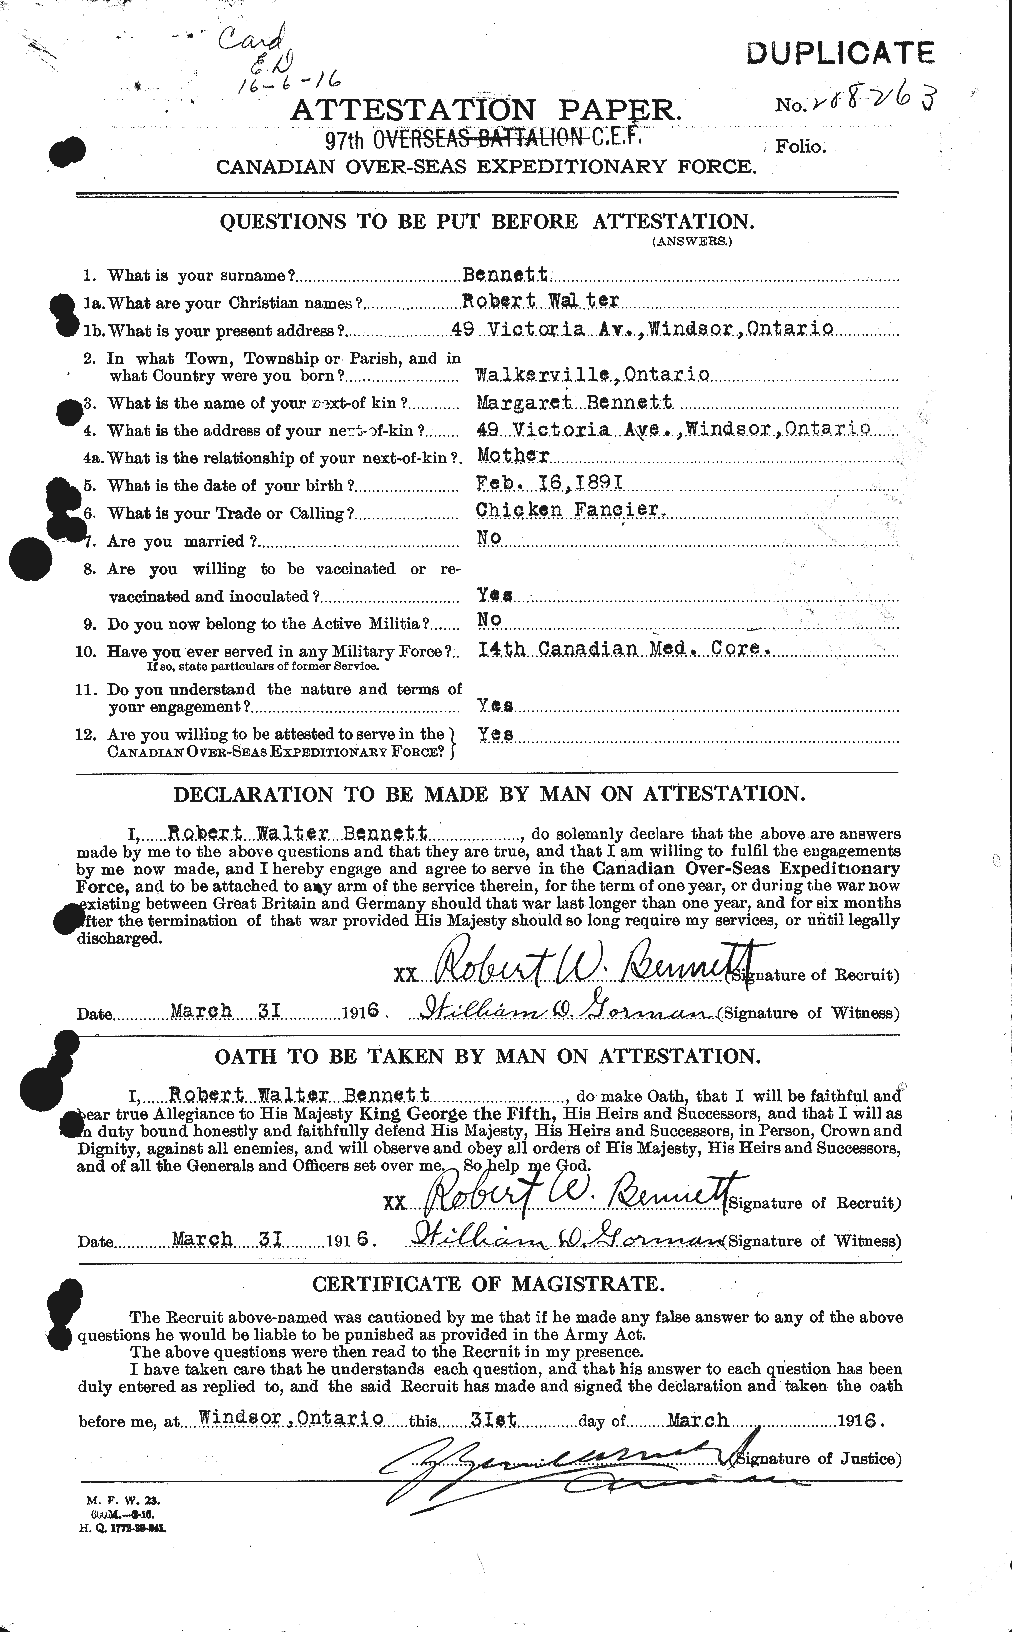 Dossiers du Personnel de la Première Guerre mondiale - CEC 239881a